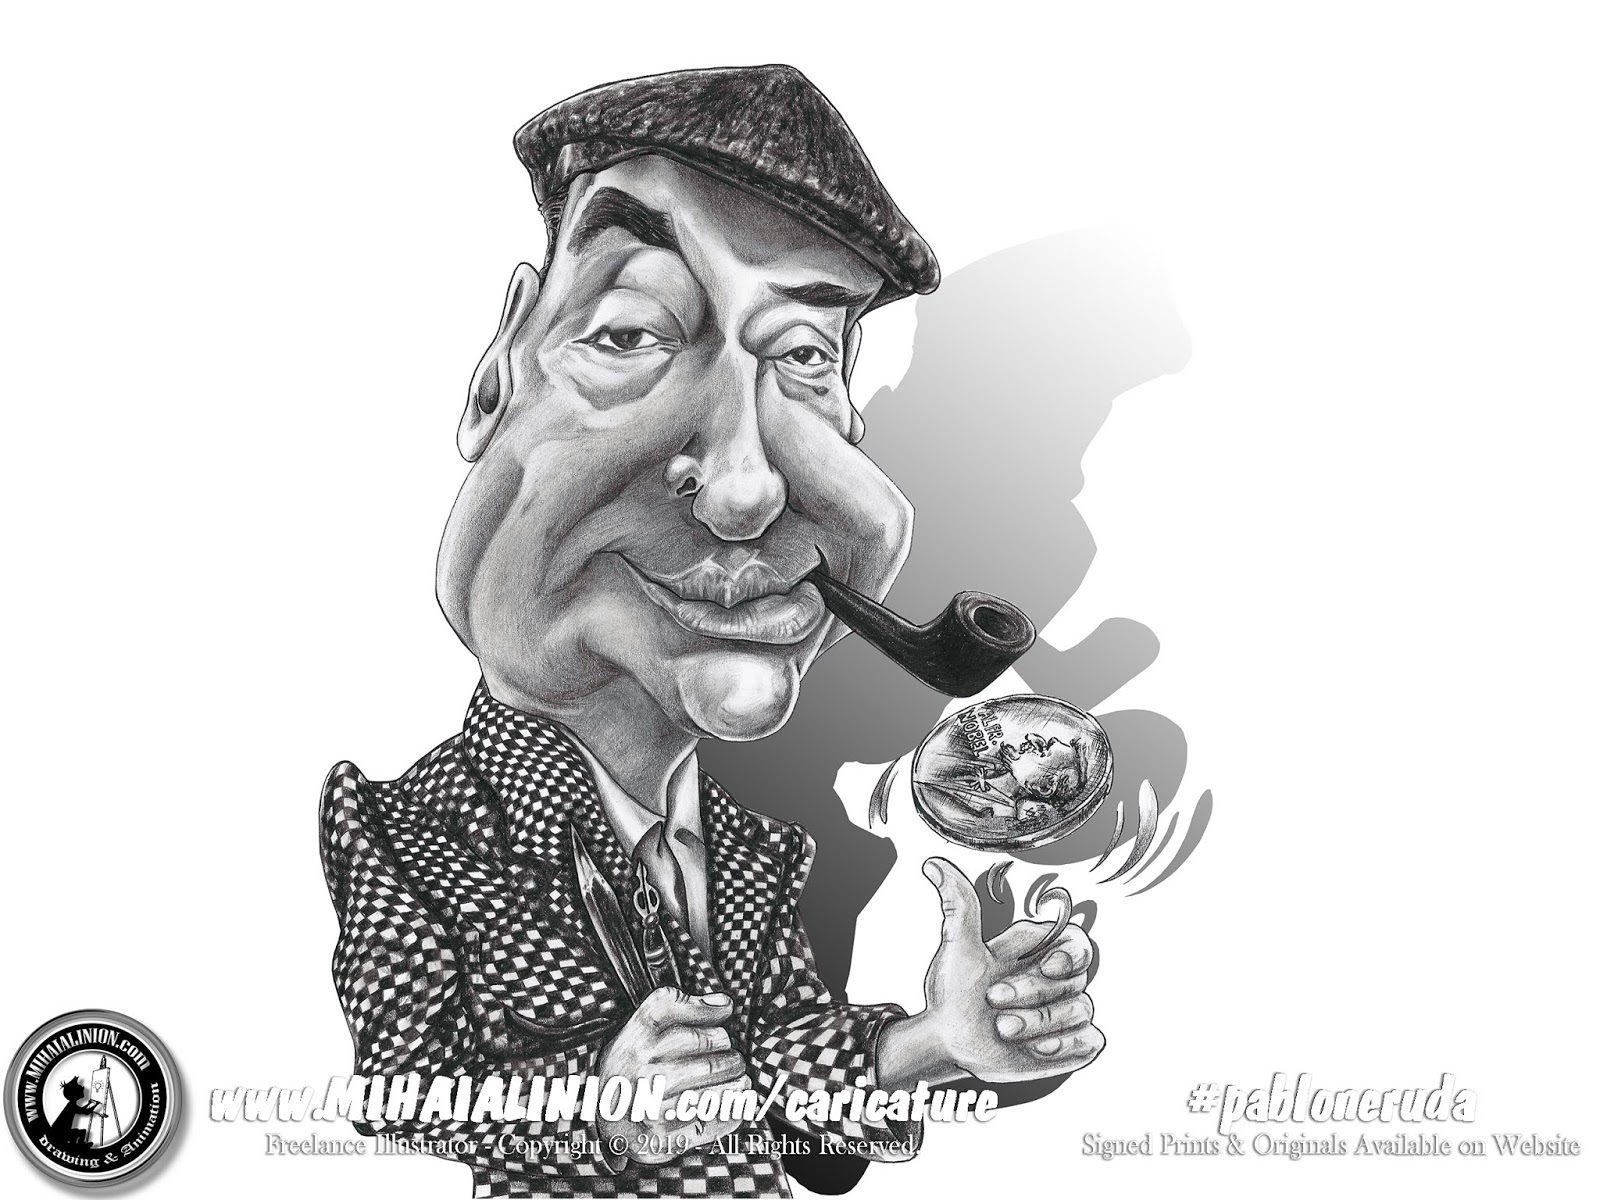 Caricature Pablo Neruda Mihai Alin Ion